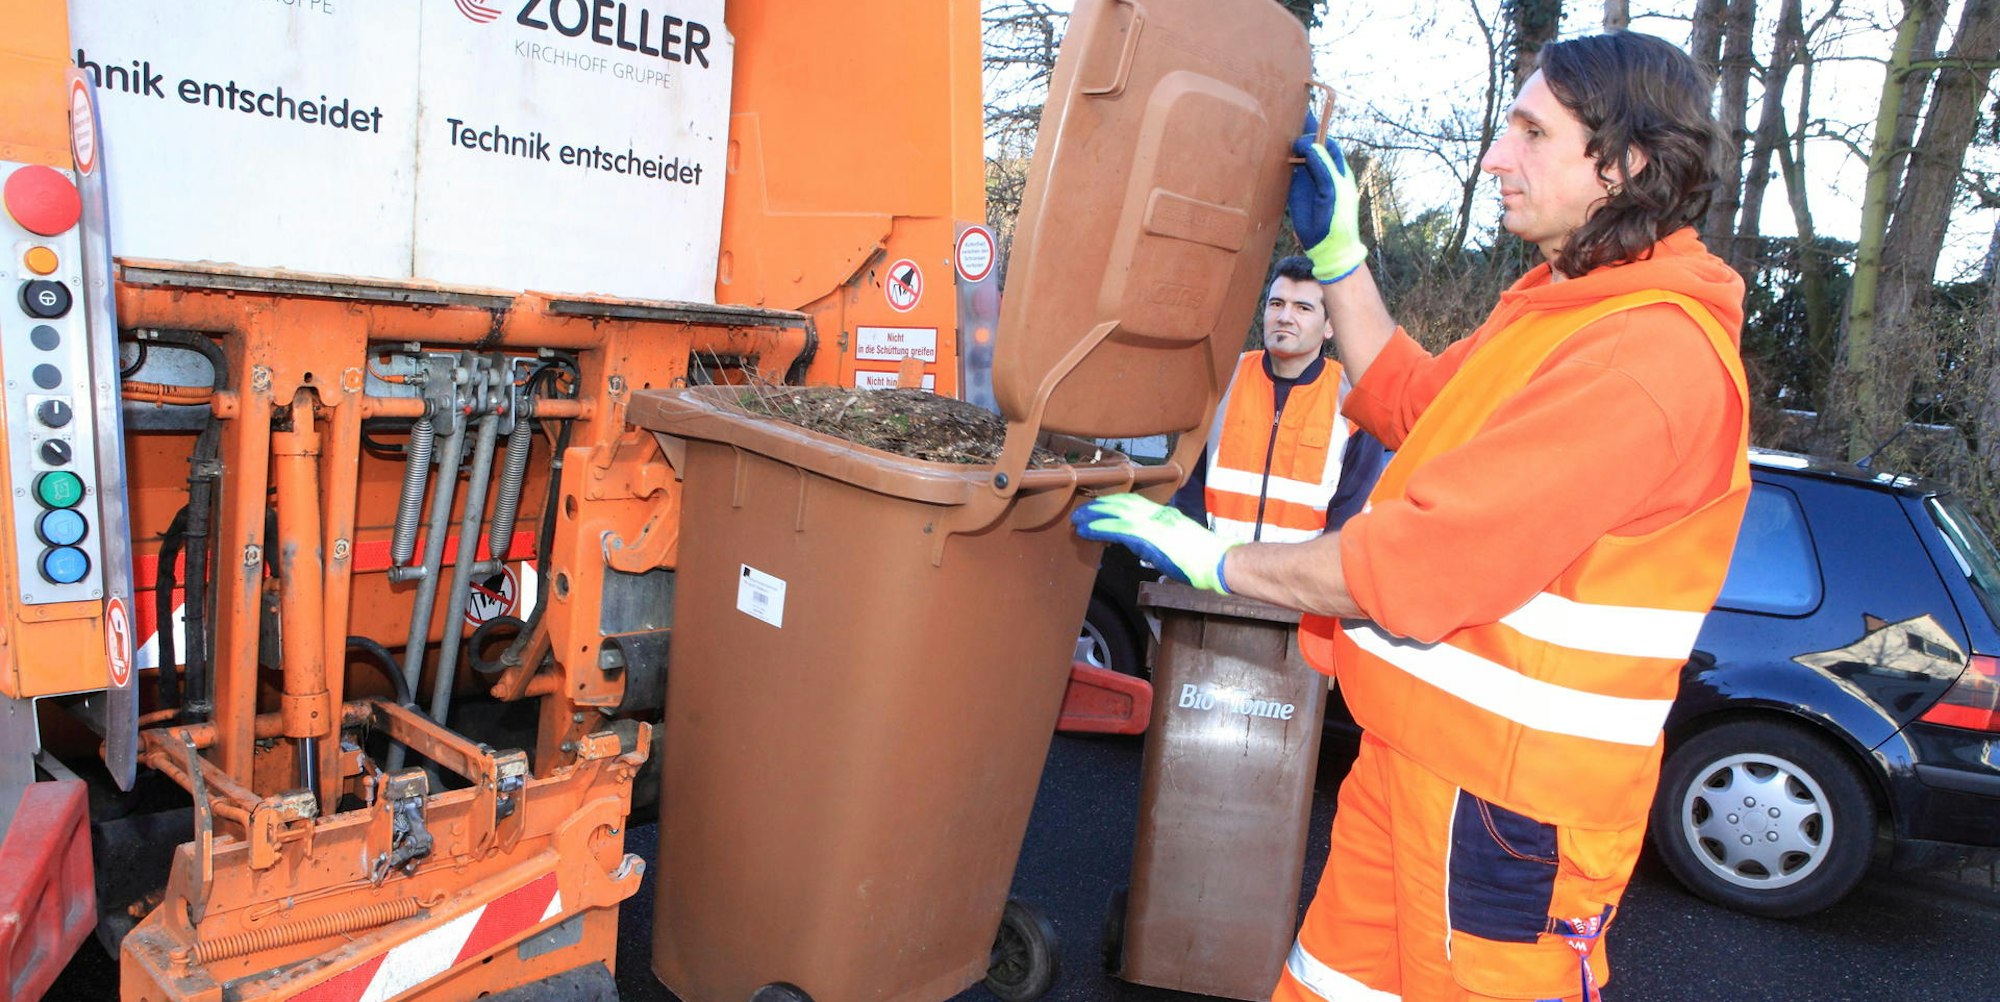 Die Organisation der Touren der Müllabfuhr steht auf dem Prüfstand. (Symbolbild)